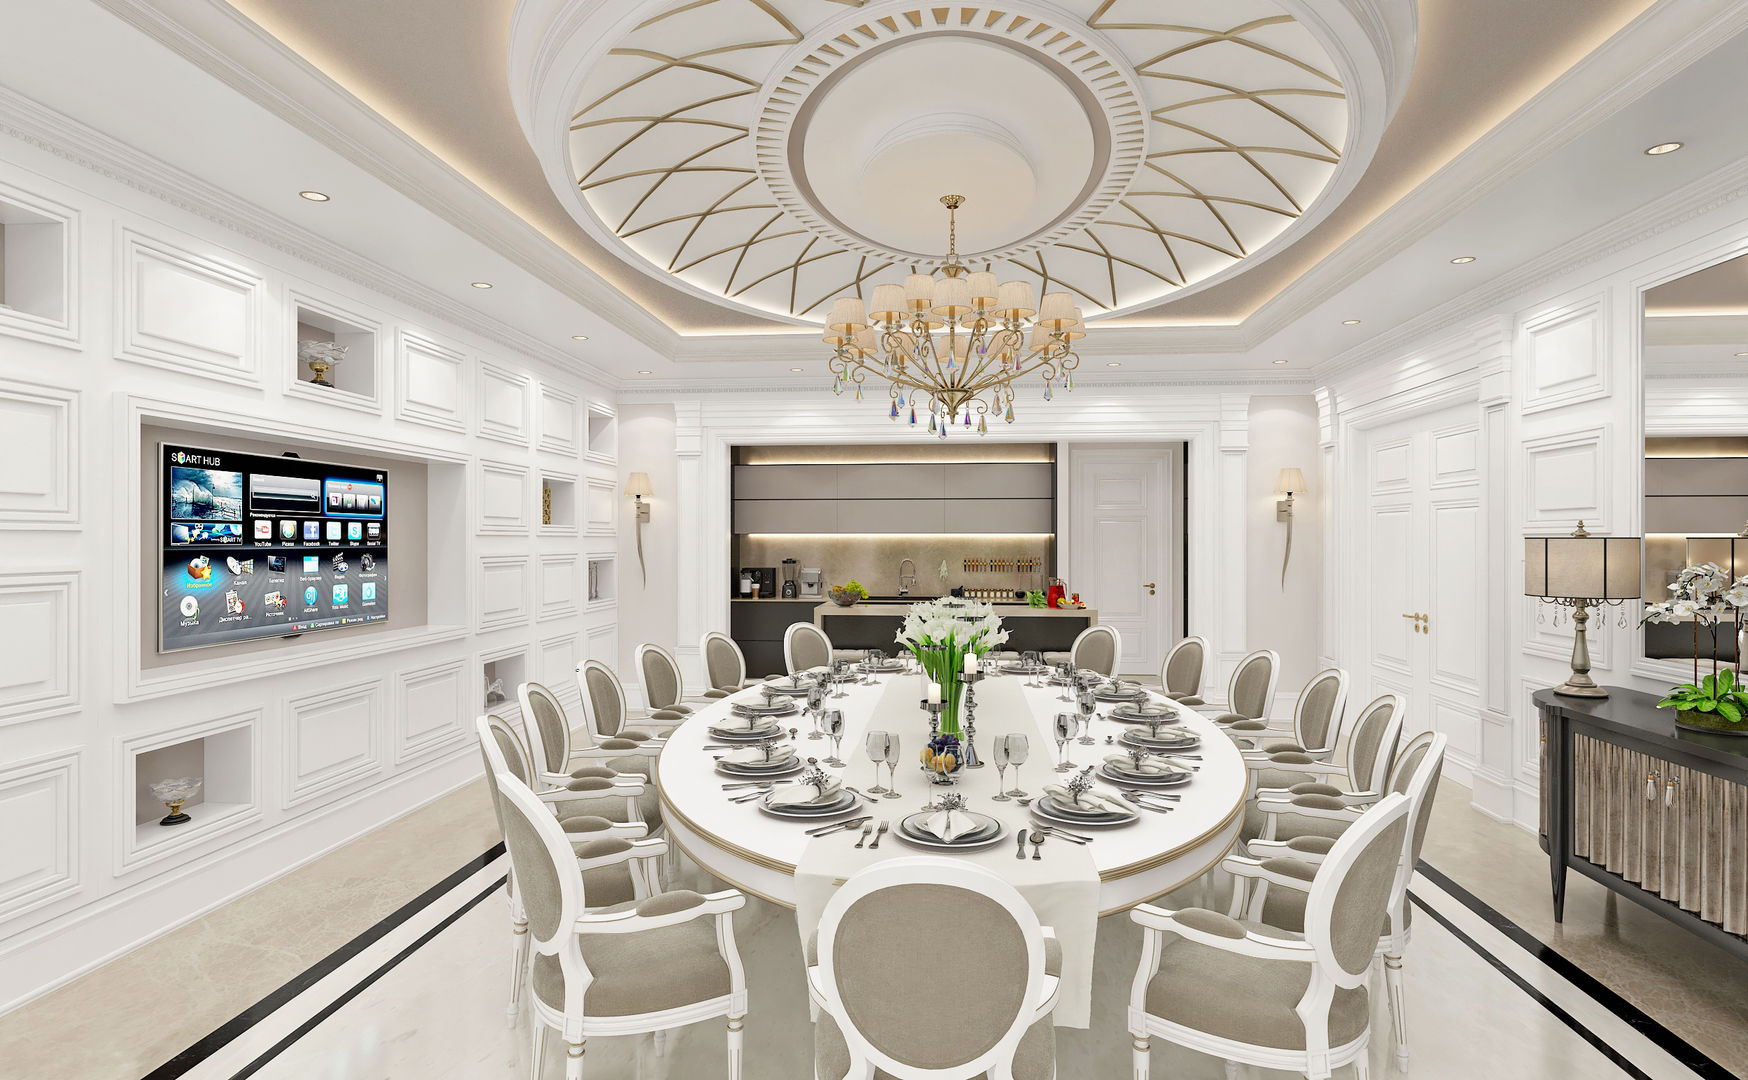 Dining Room Sia Moore Archıtecture Interıor Desıgn Salon classique